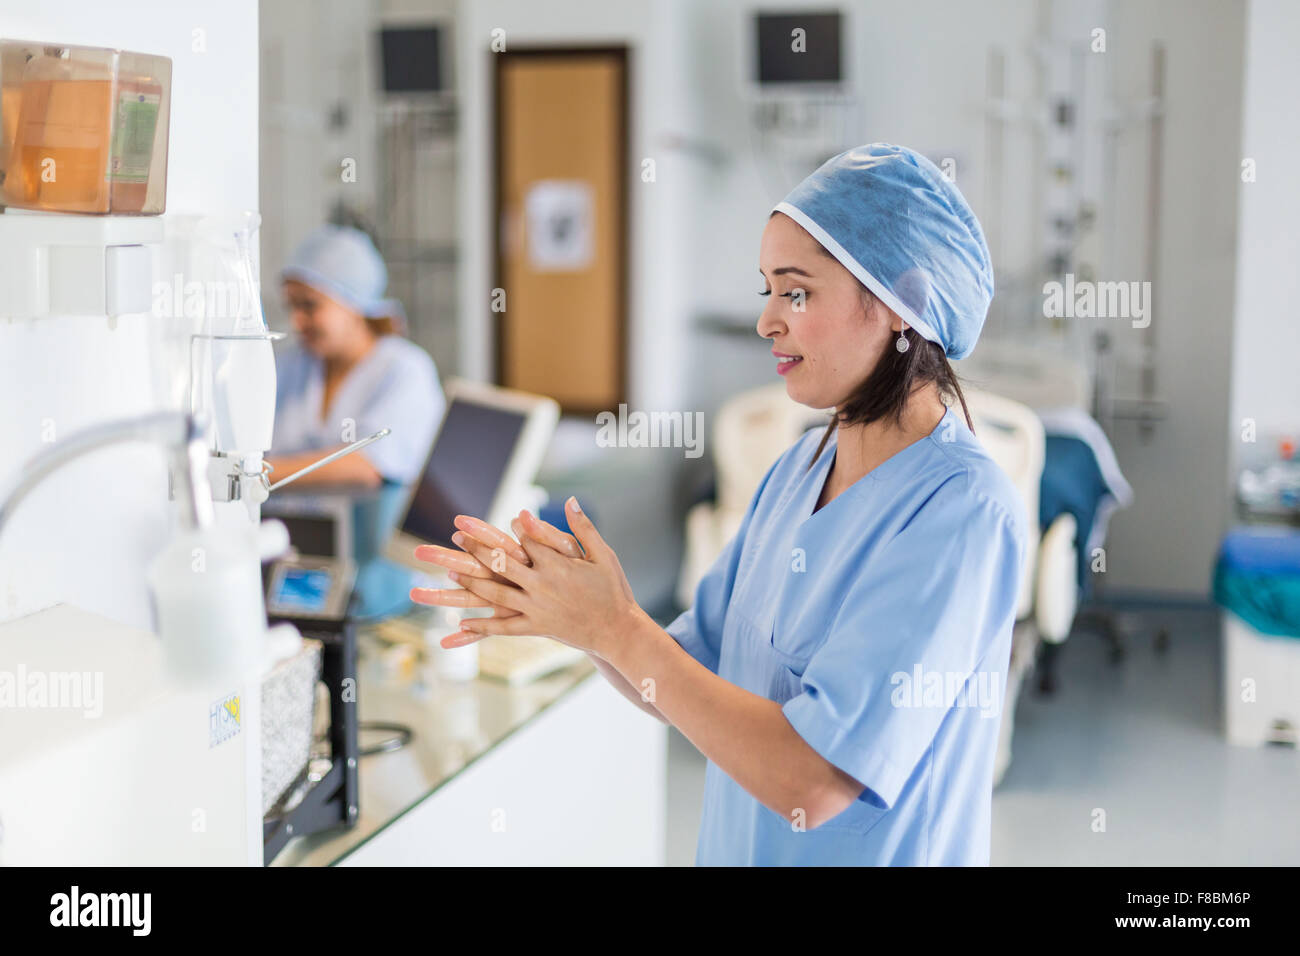 Enfermera lavando sus manos en el fregadero. Foto de stock